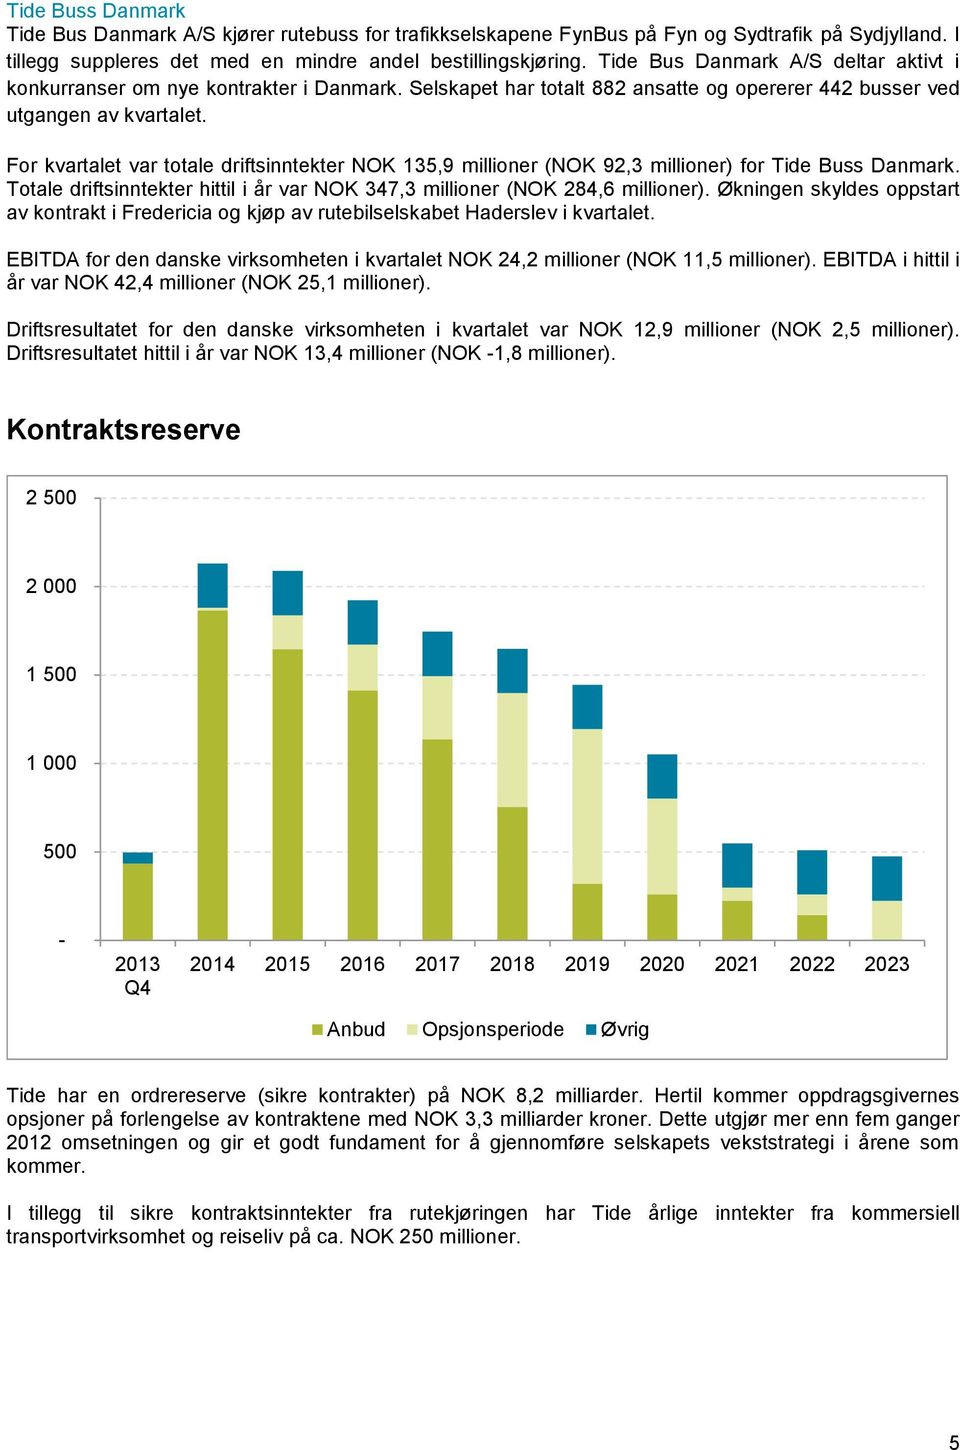 For kvartalet var totale driftsinntekter NOK 135,9 millioner (NOK 92,3 millioner) for Tide Buss Danmark. Totale driftsinntekter hittil i år var NOK 347,3 millioner (NOK 284,6 millioner).